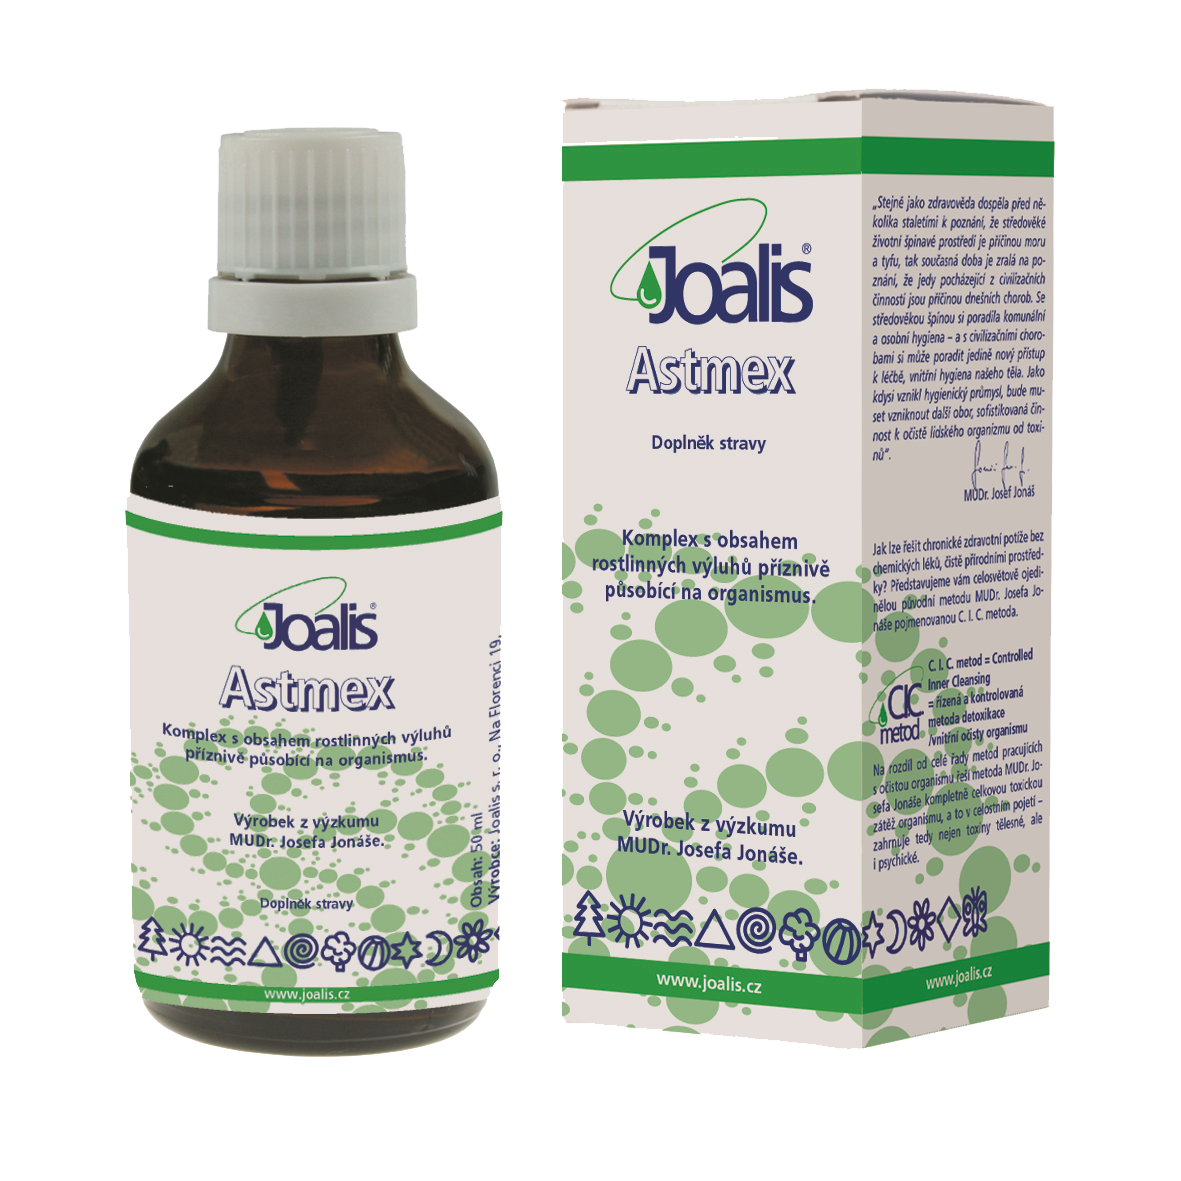 Joalis Astex (astma)